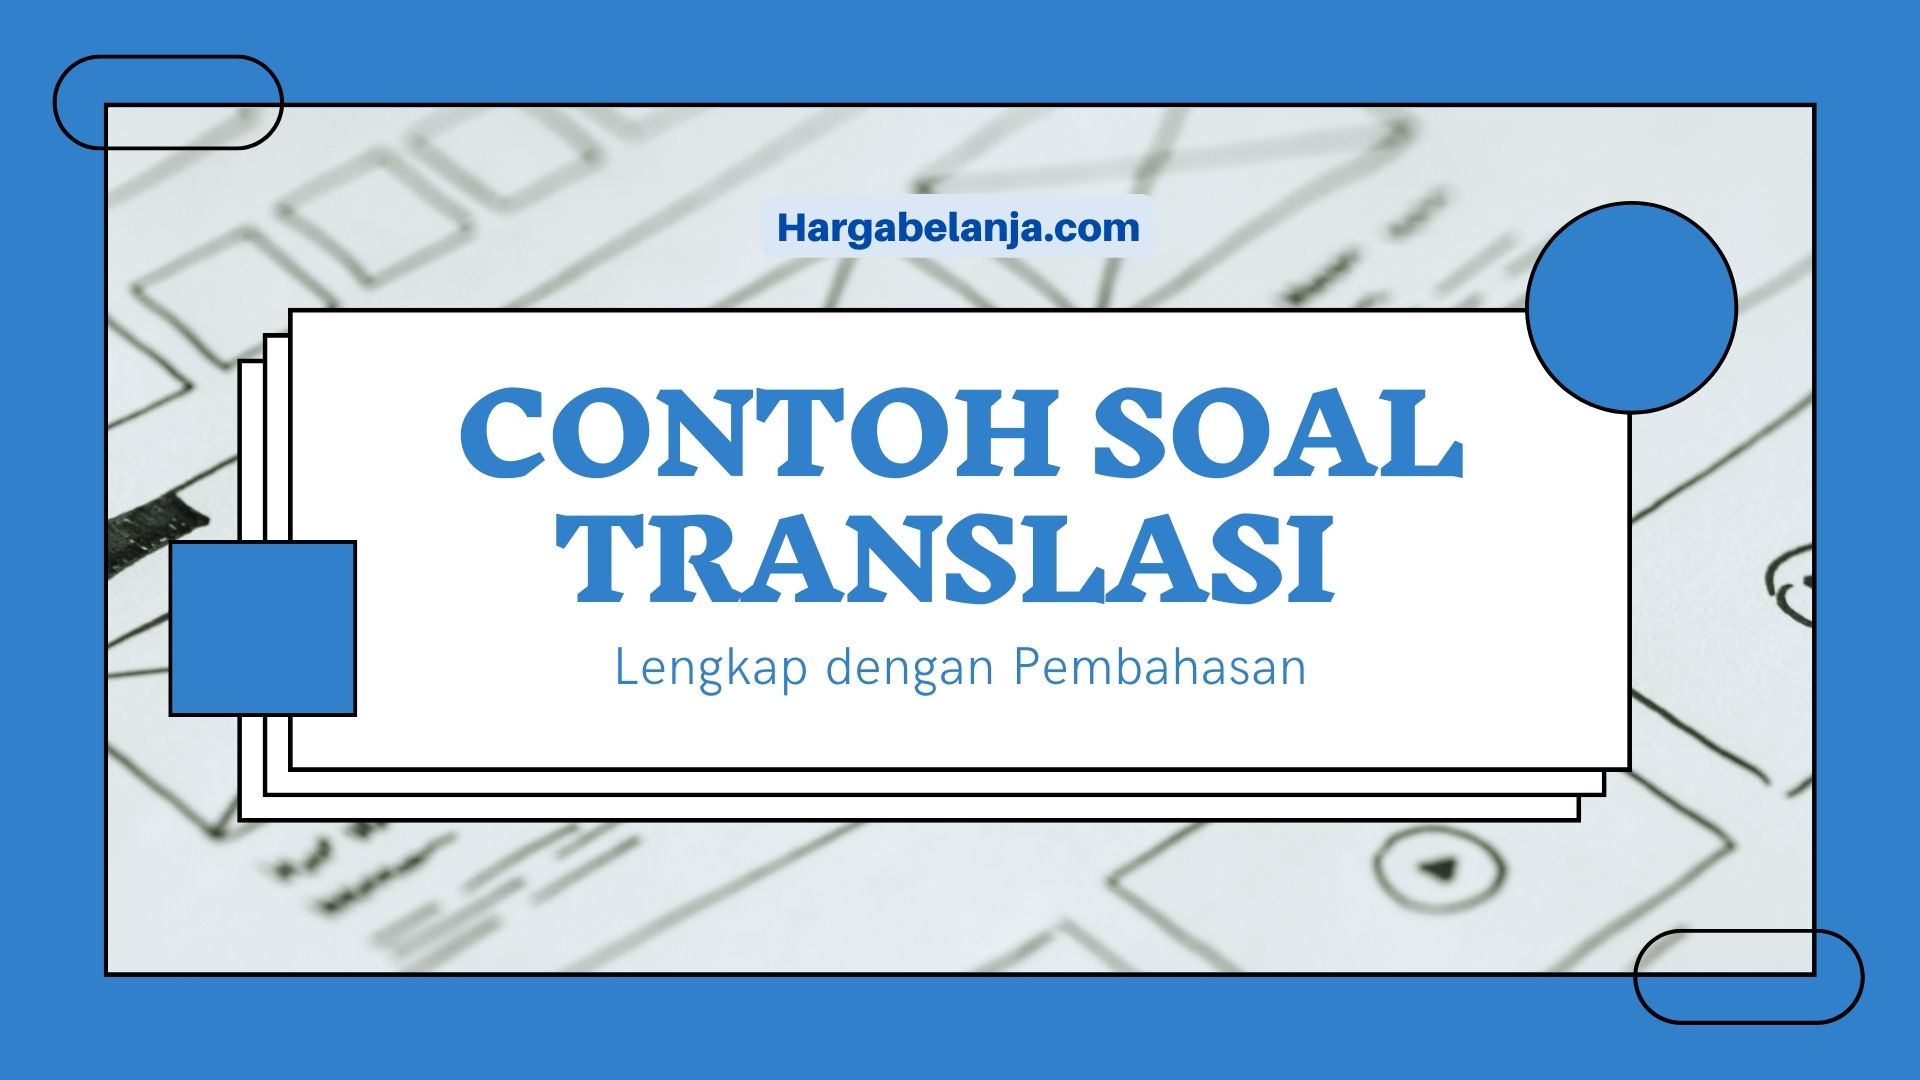 Contoh Soal Translasi - Hargabelanja.com